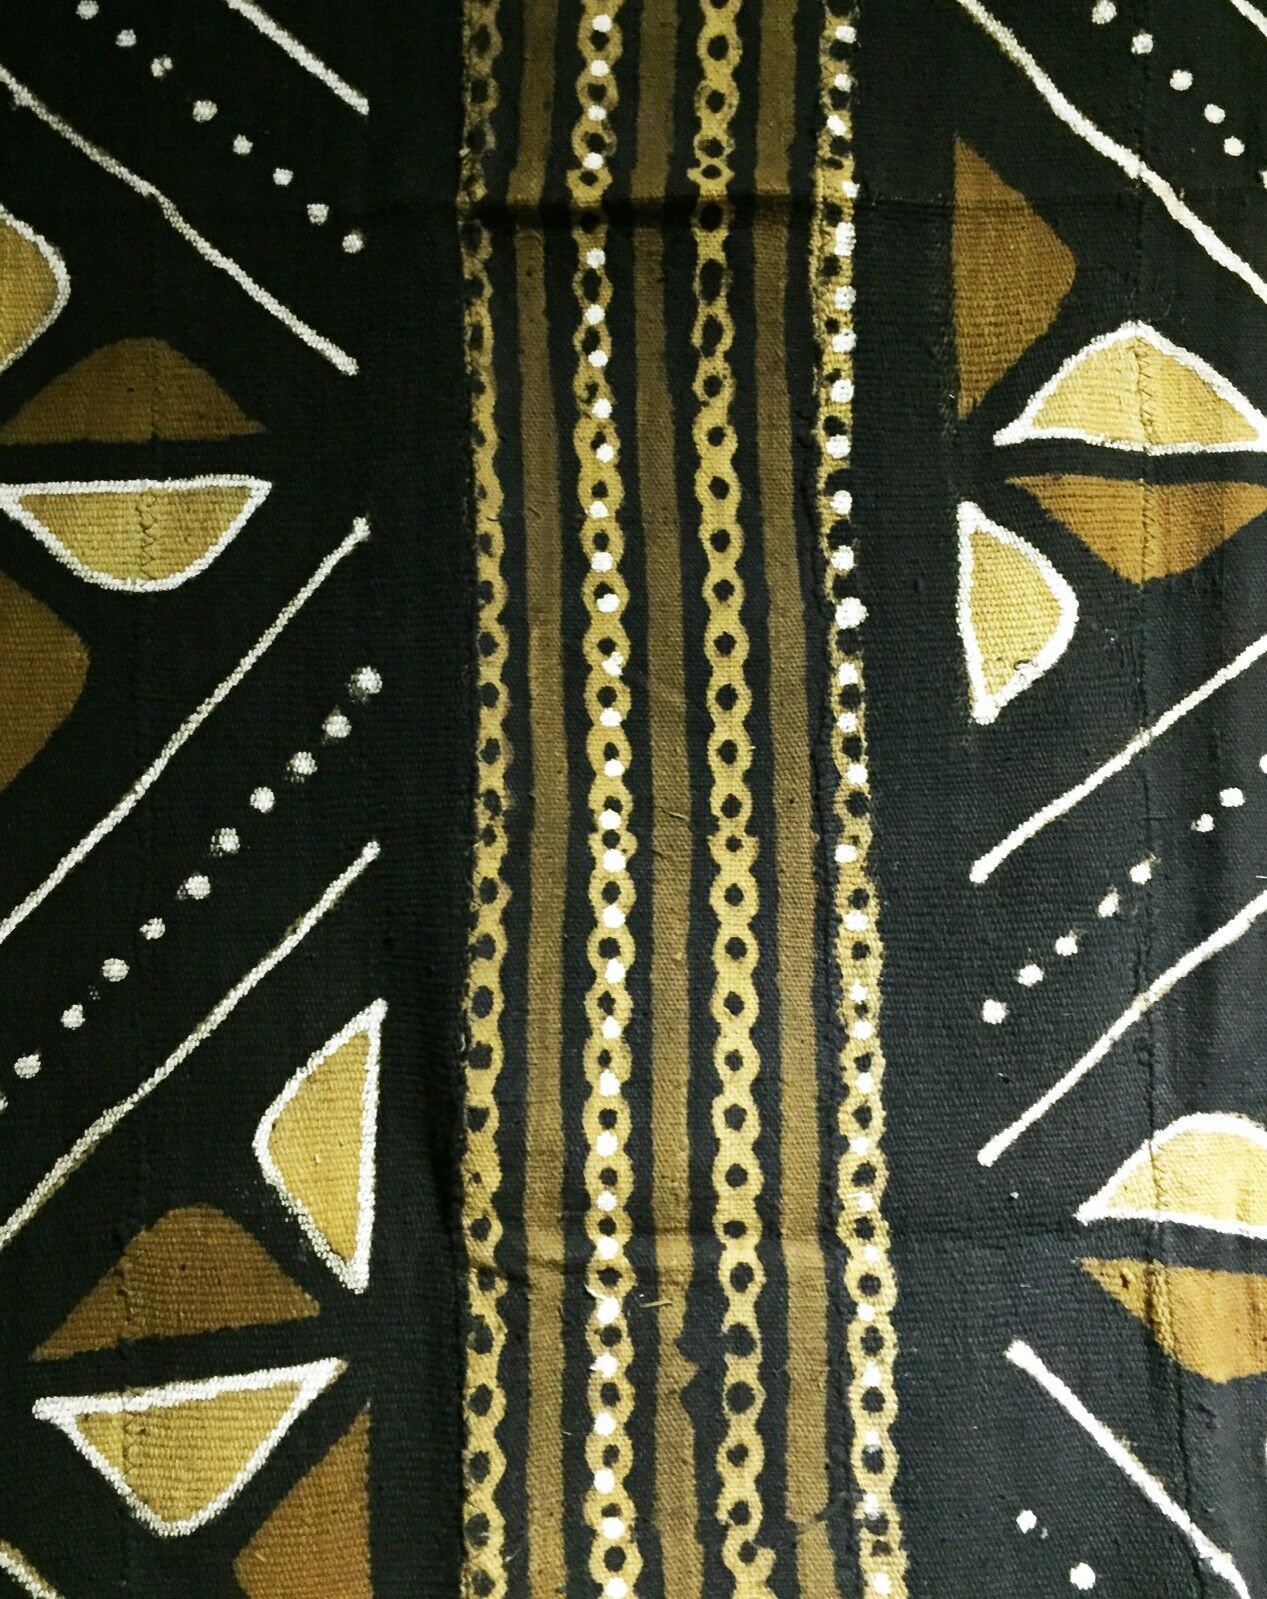 Superb Bogolan Mali Mud Cloth Textile 40" by 60" # 1750